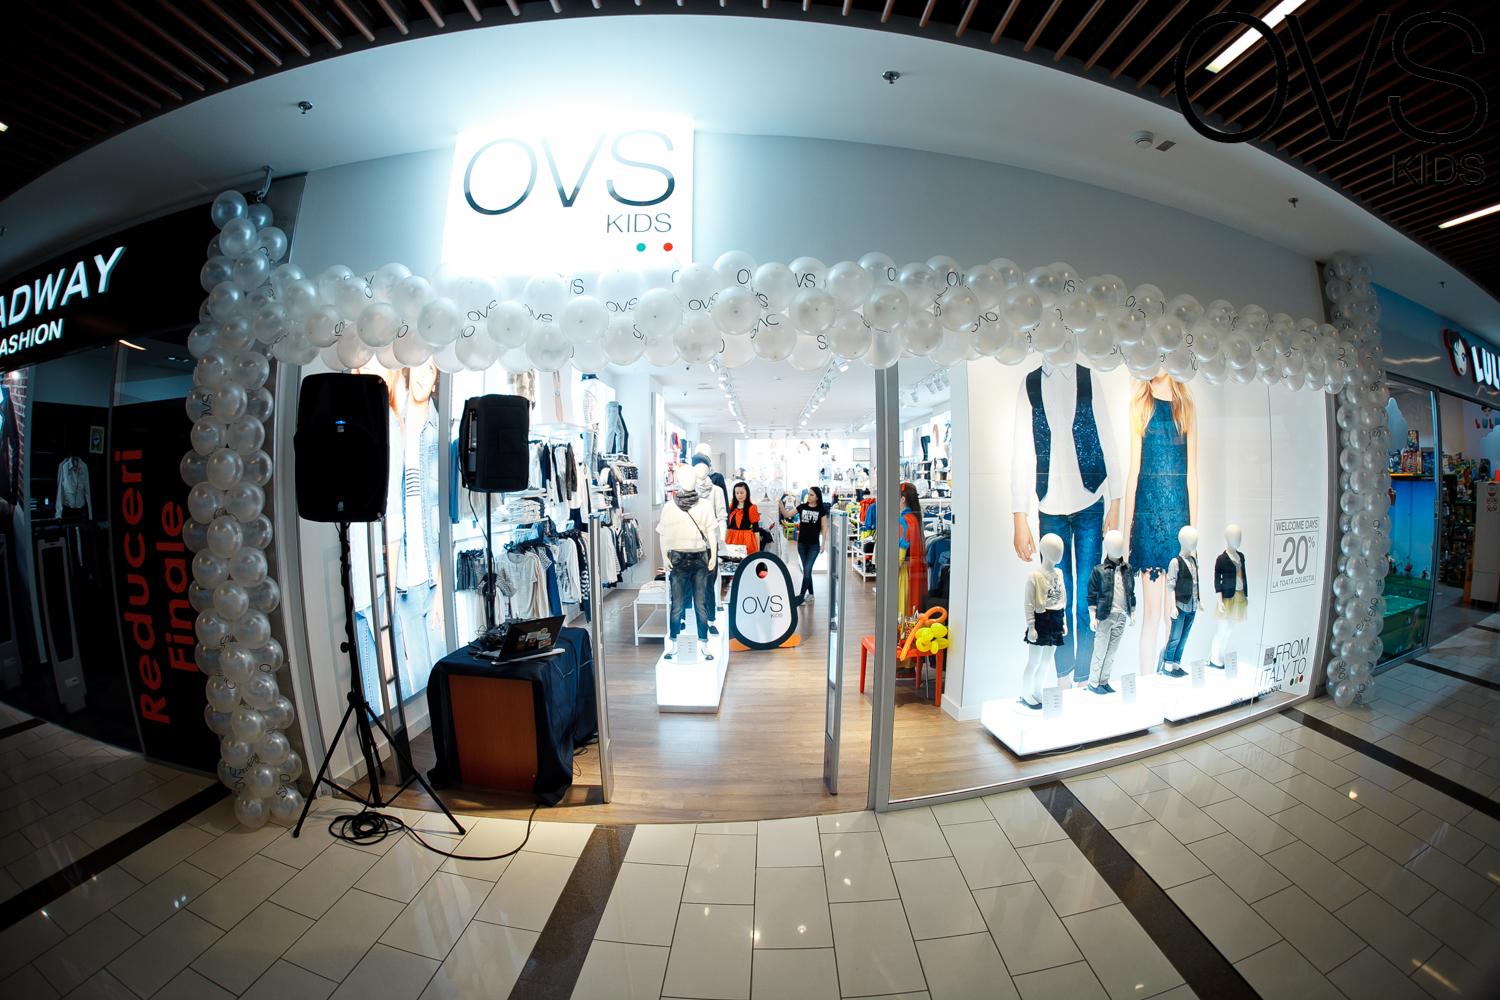 Deschiderea magazinului de haine pentru copii OVS Kids